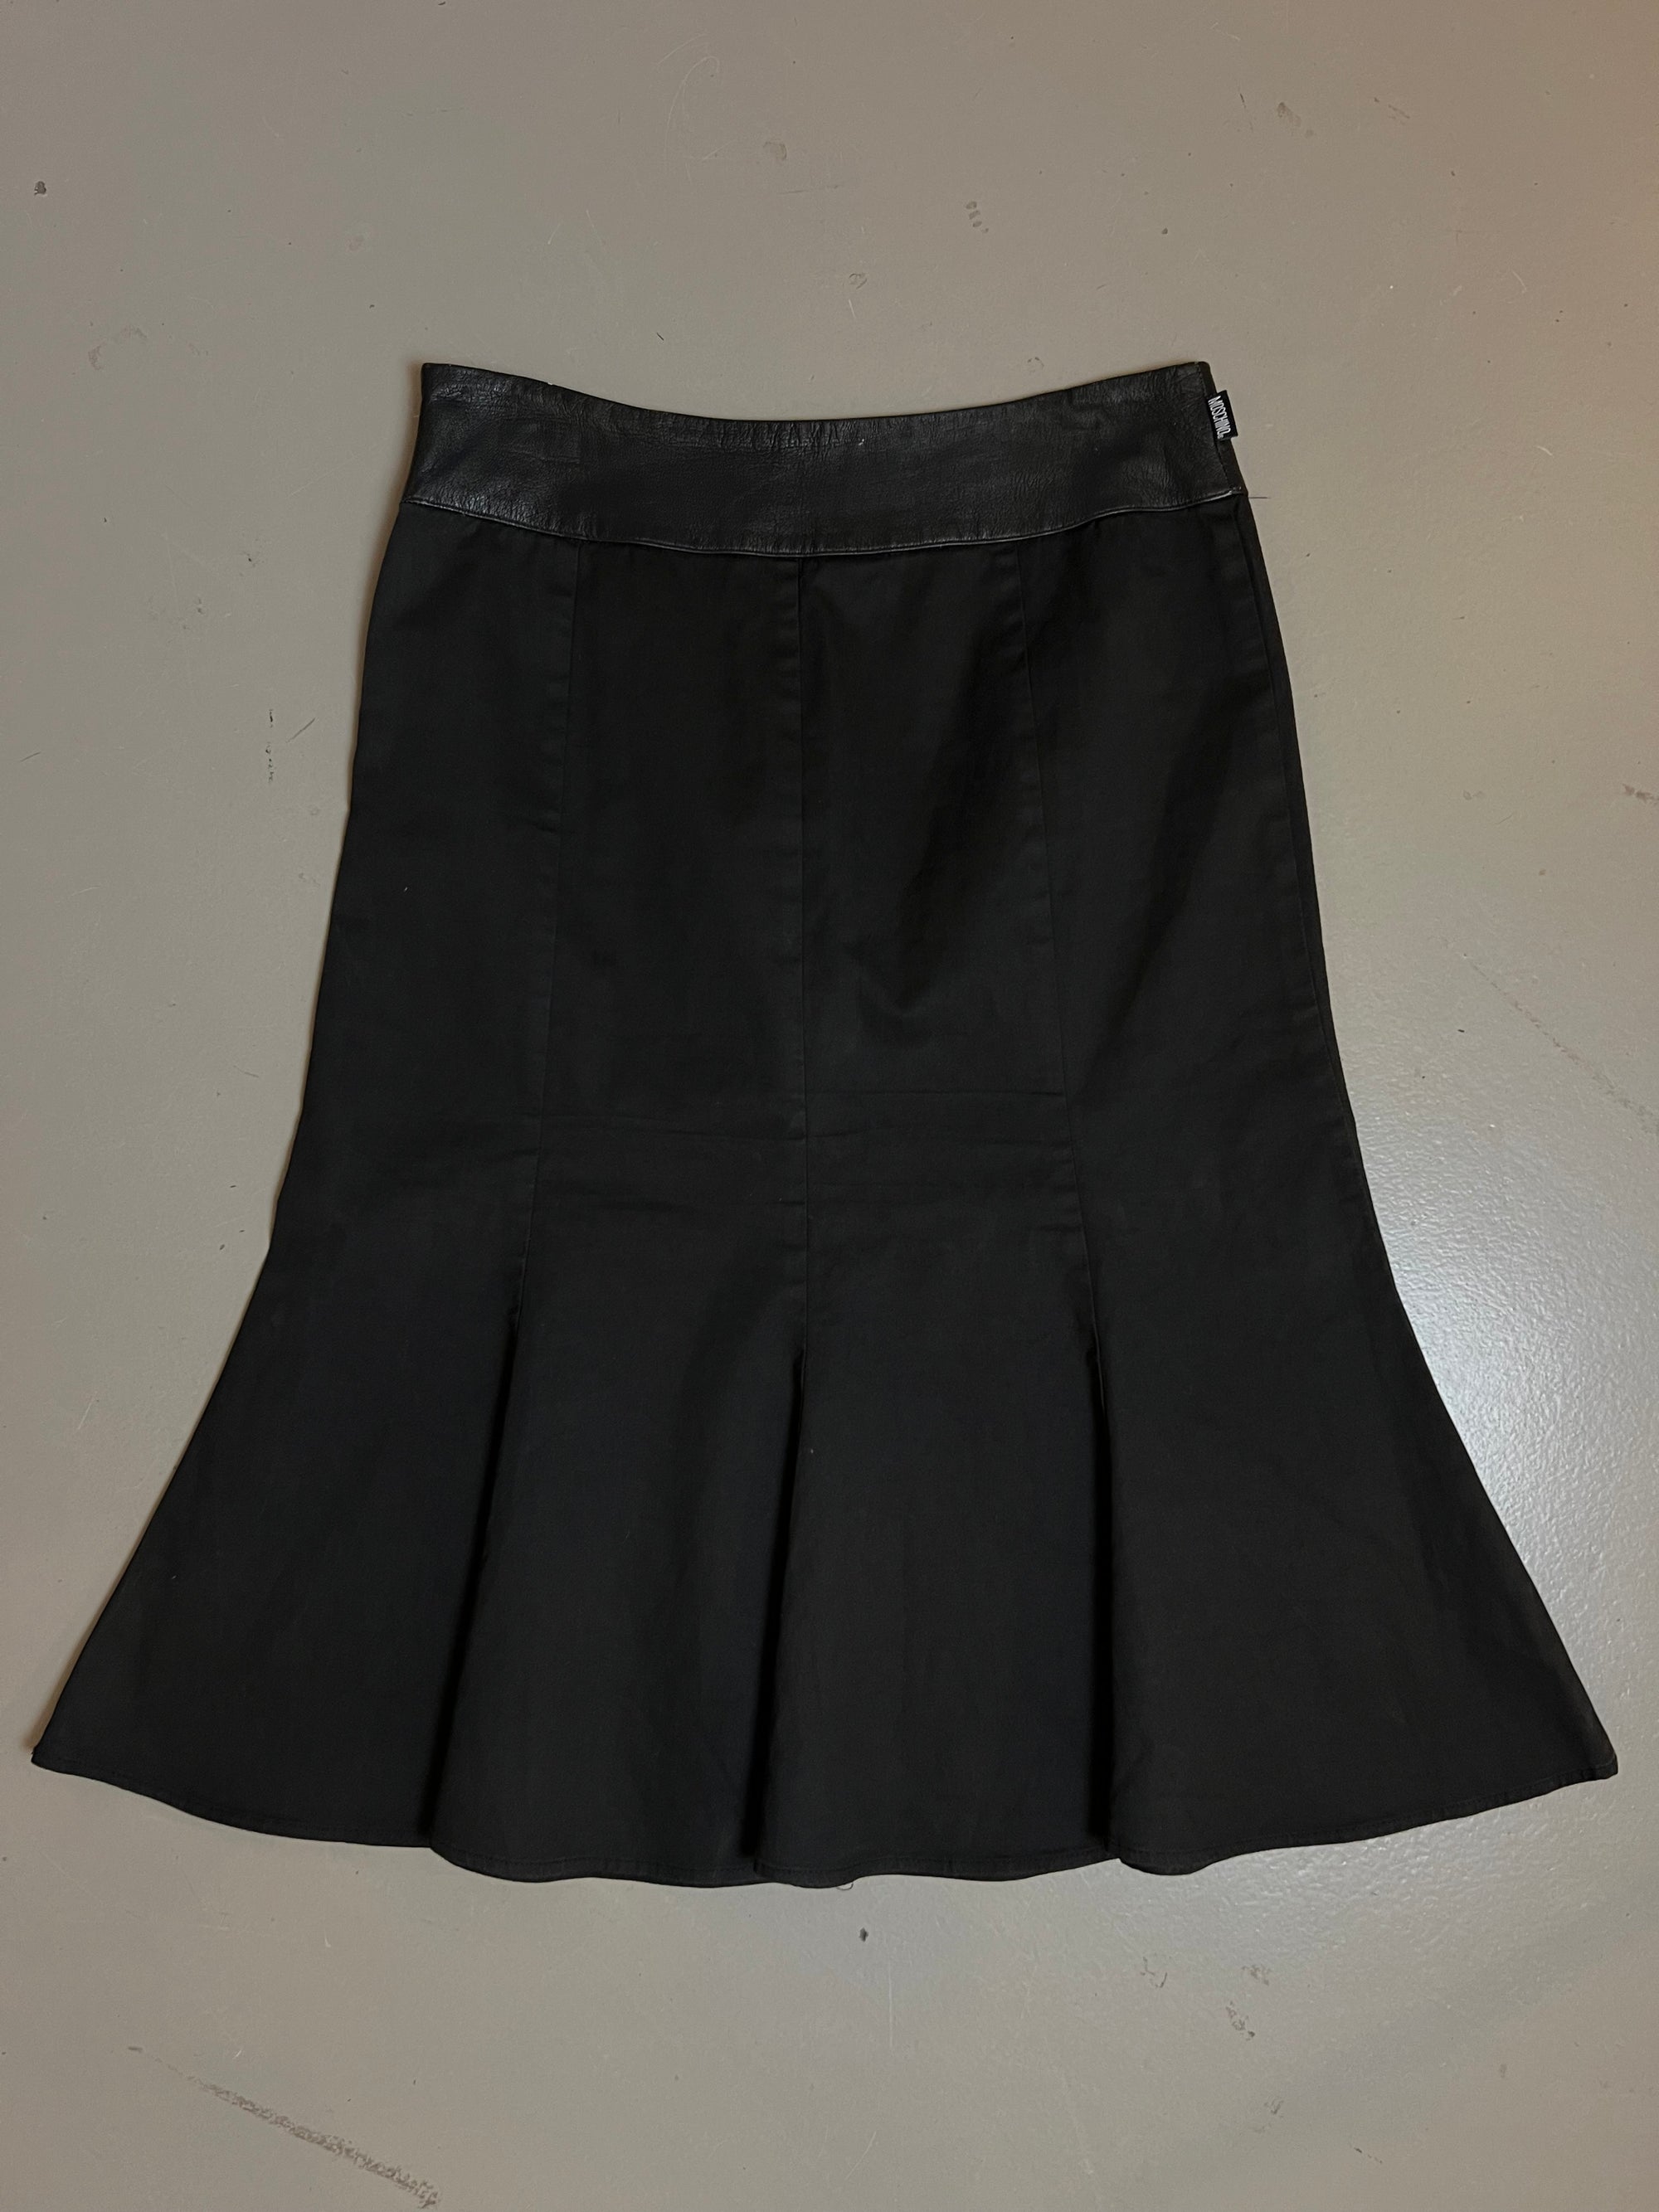 Produkt Bild von Vintage Black Moschino Skirt S/M von vorne